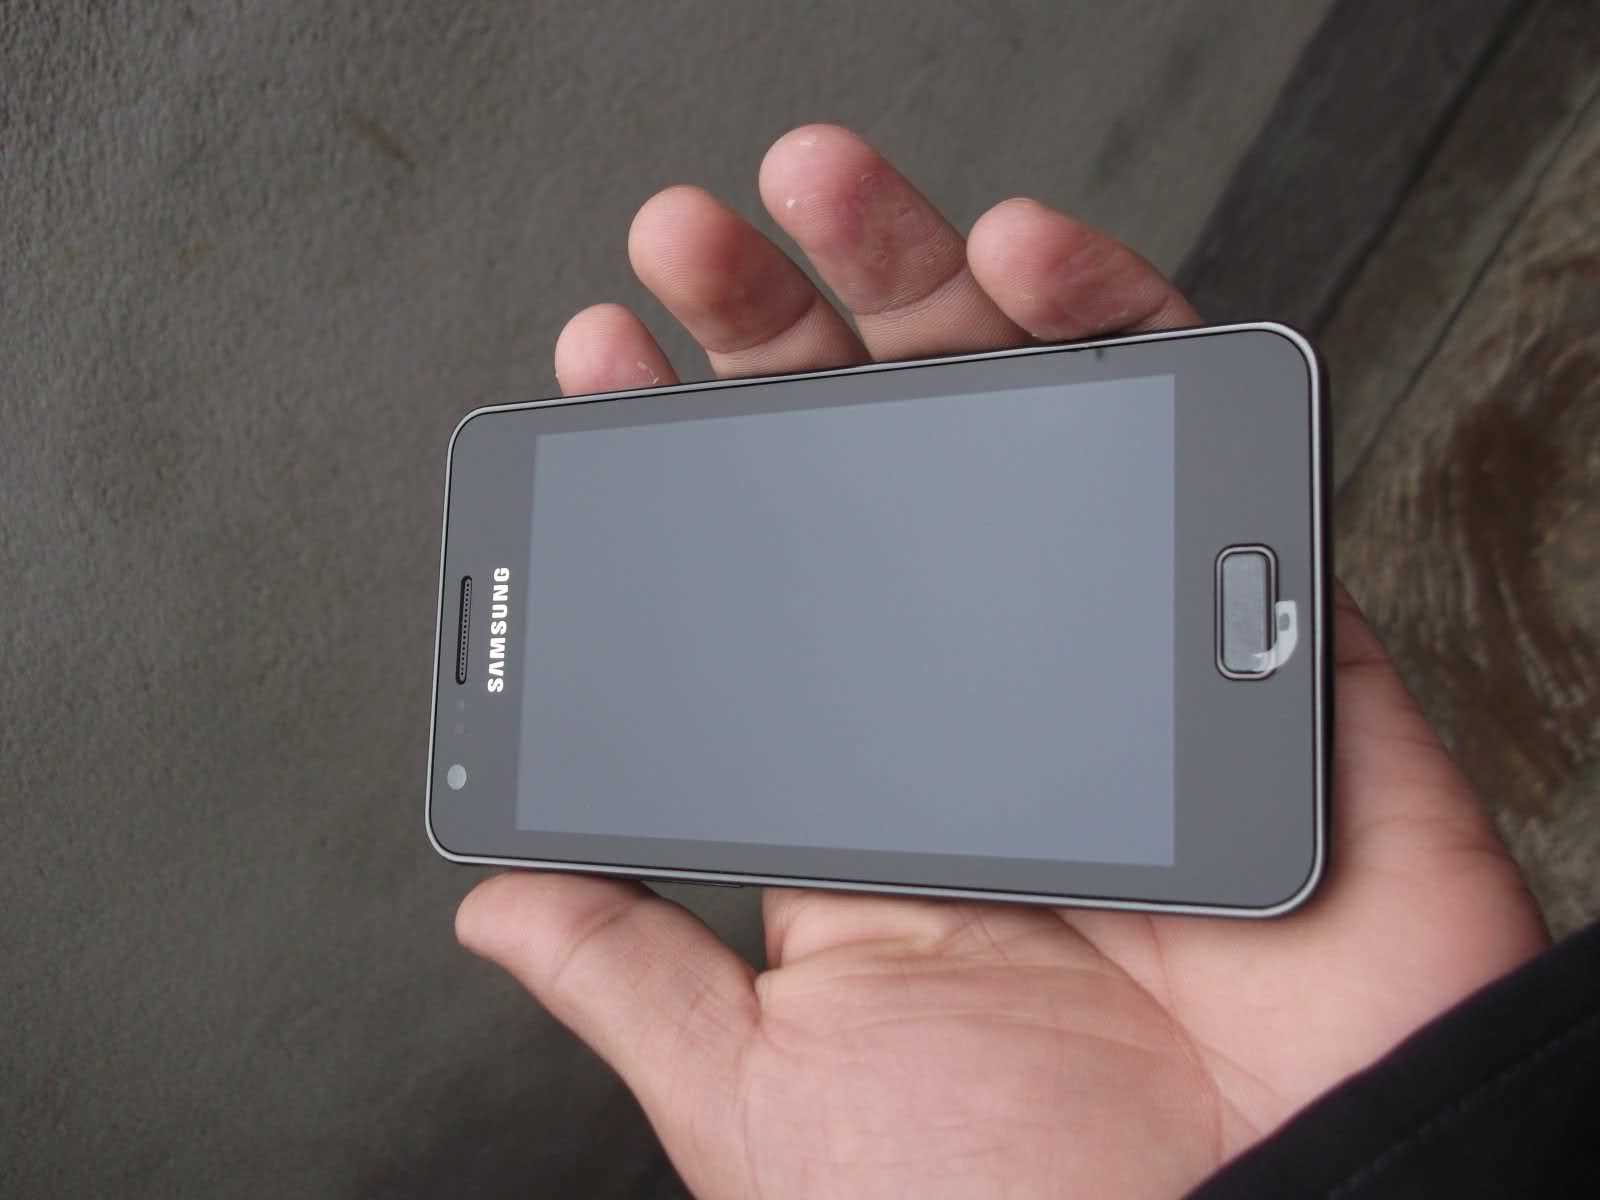 Samsung Galaxy R i9103 դեմից կամեռա skype-ի համար